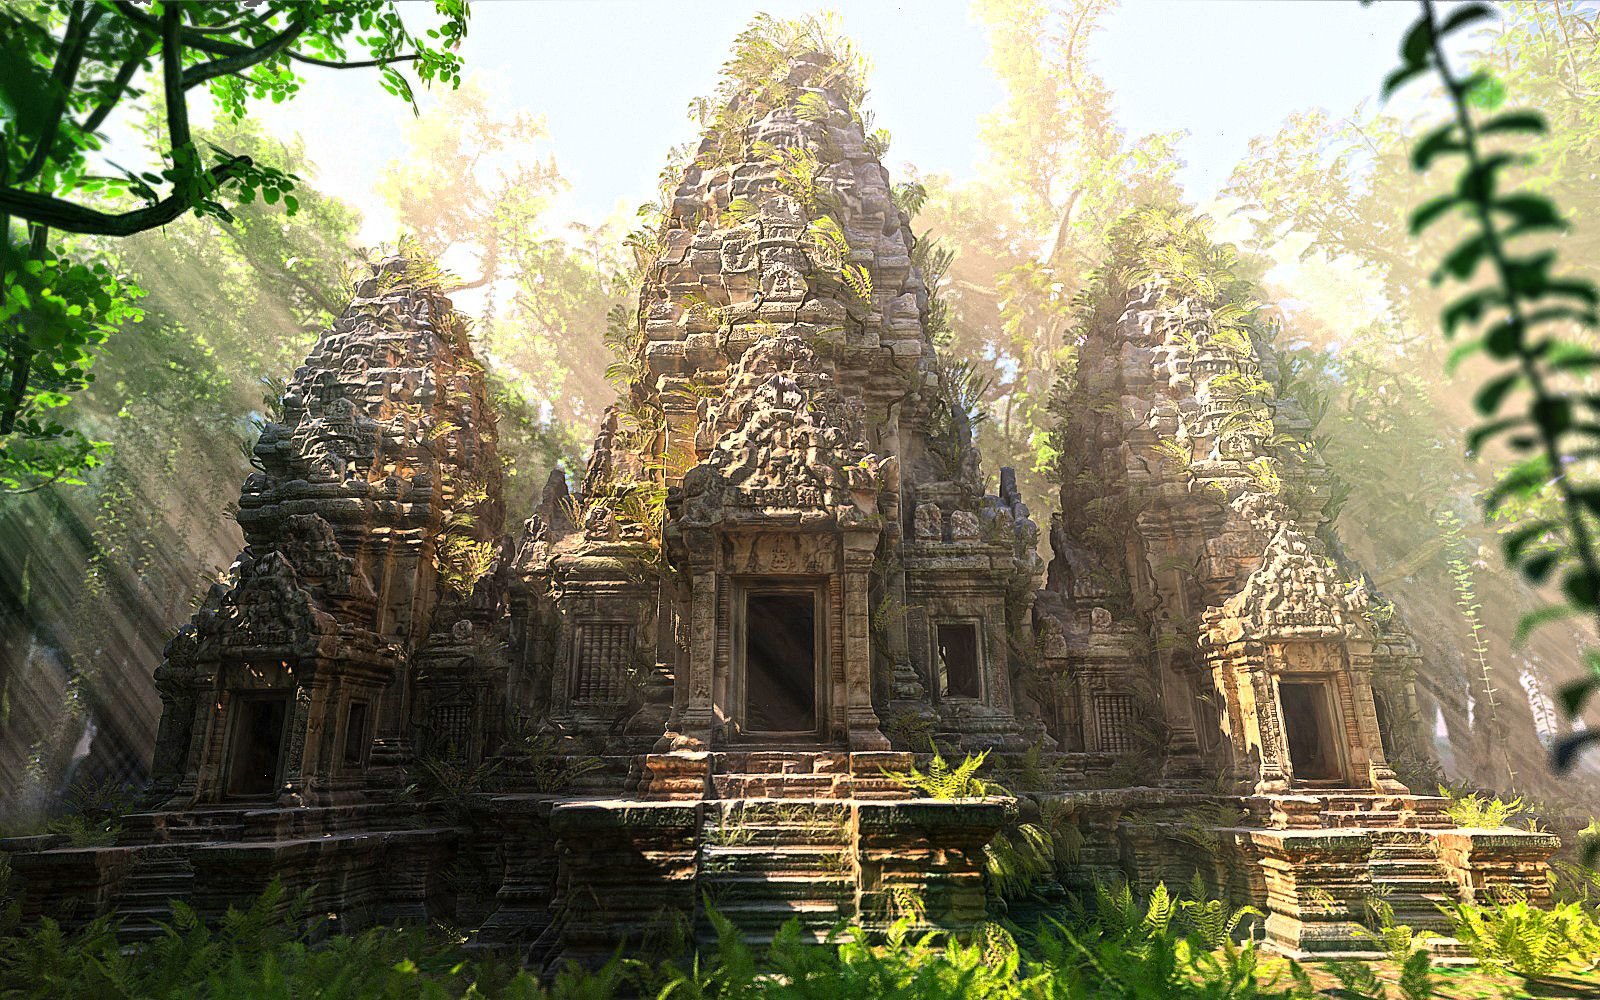 Lost temple. Затерянный город в джунглях Ангкор. Затерянный храм в джунглях Индии. Затерянный город в Камбодже. Керала храм в джунглях.